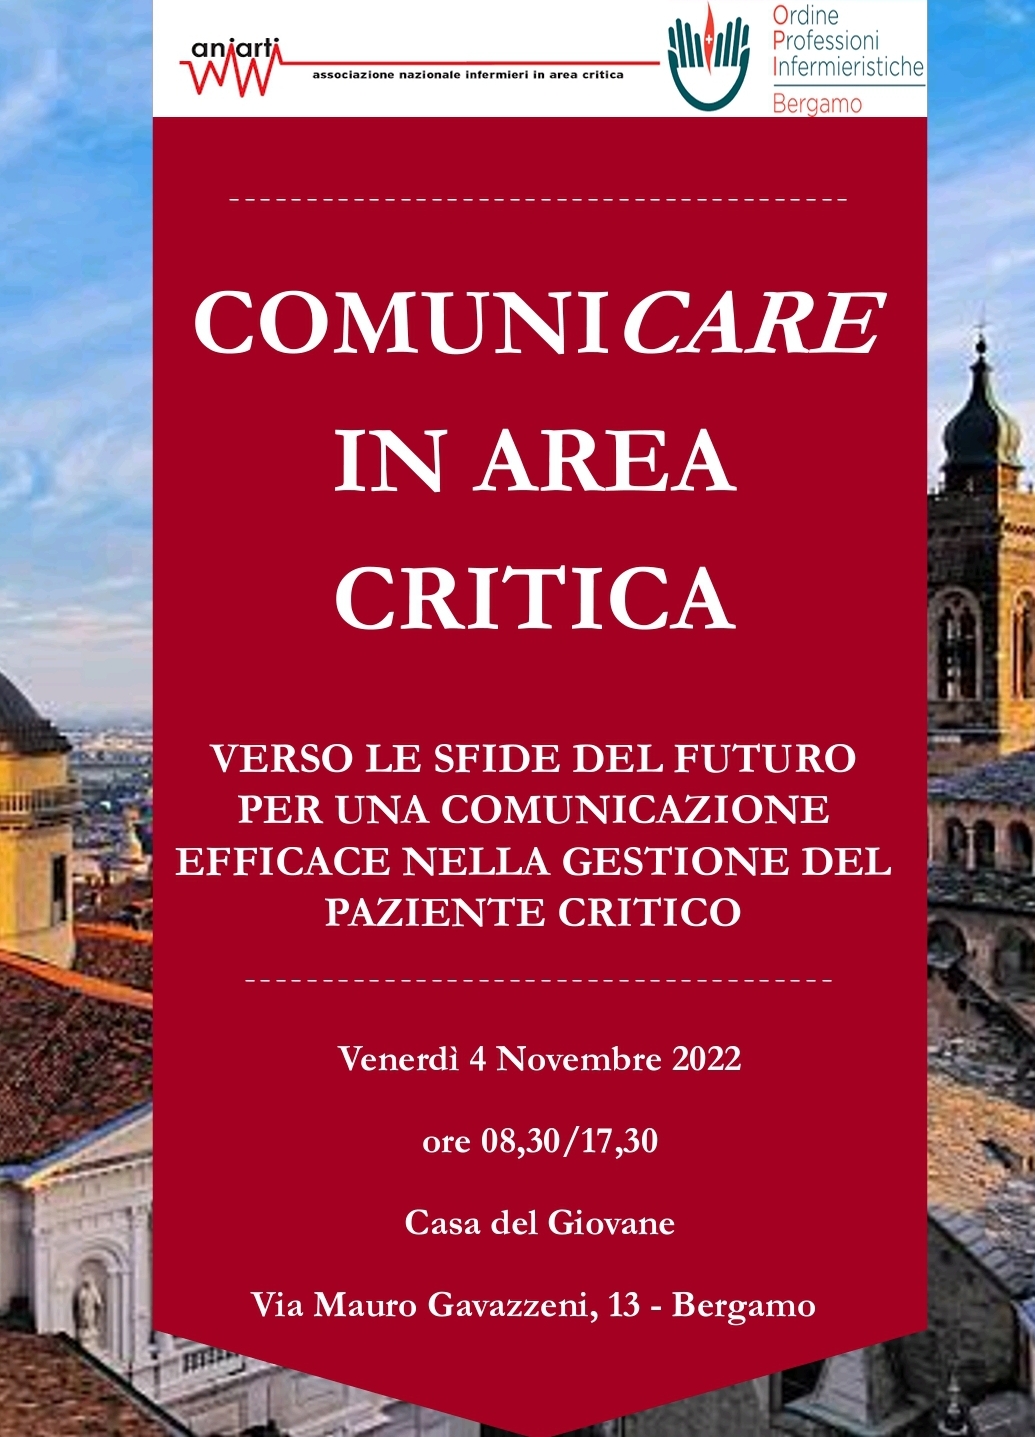 Corso formativo "ComuniCArE  in Area Critica"